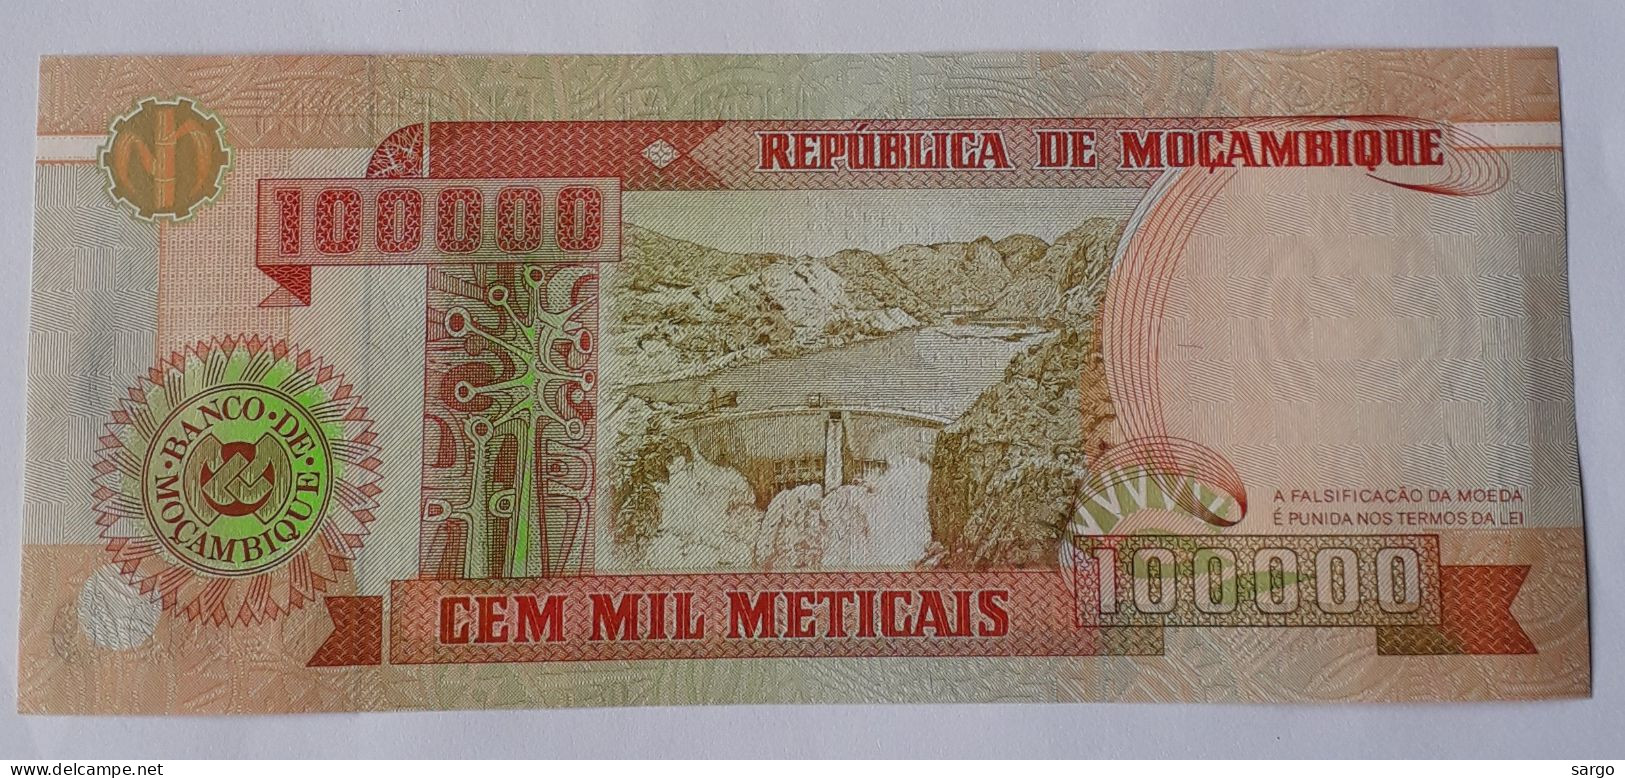 MOZAMBIQUE - 100.000 METICAIS - P 139  (1993)  - UNC - BANKNOTES - PAPER MONEY - CARTAMONETA - - Mozambico